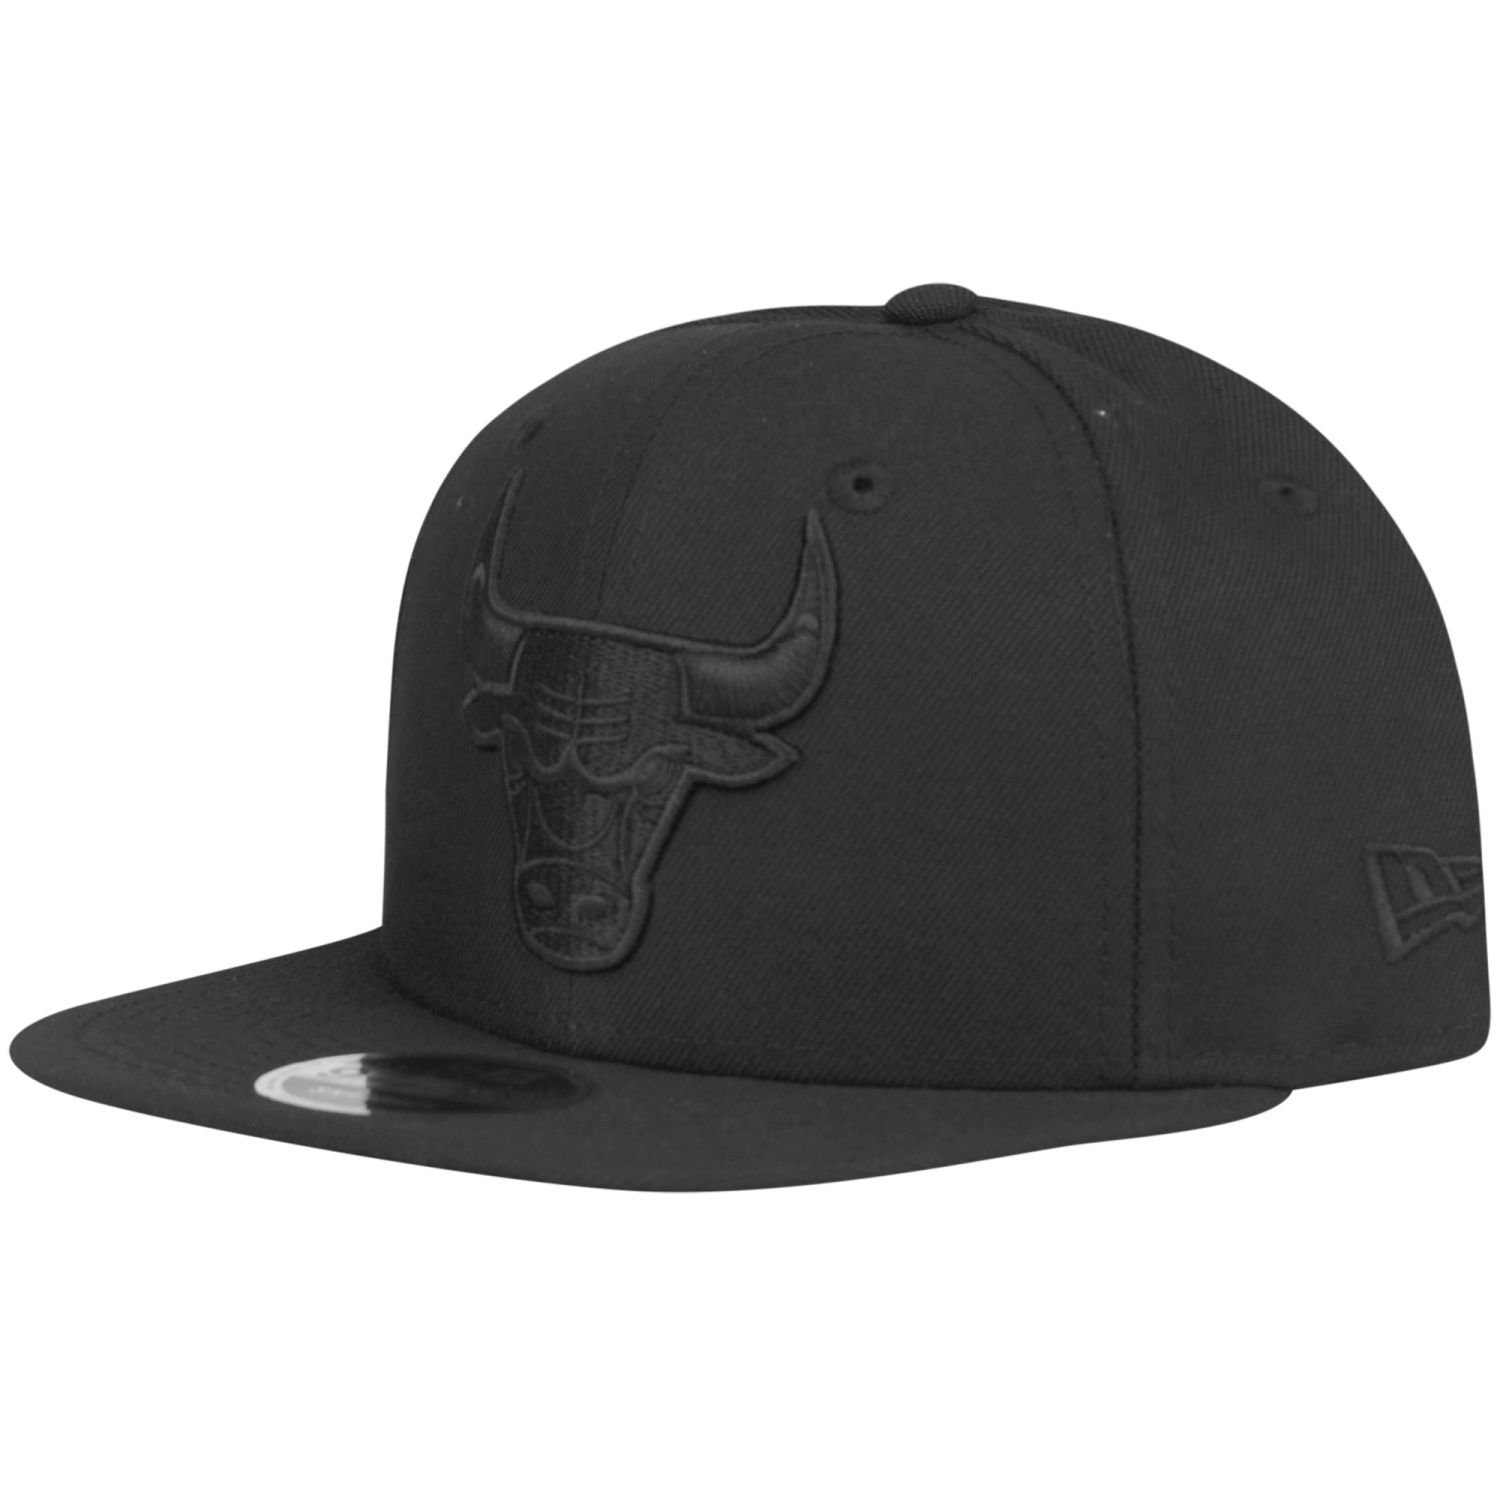 New Era Snapback 9Fifty Cap Original Bulls Chicago